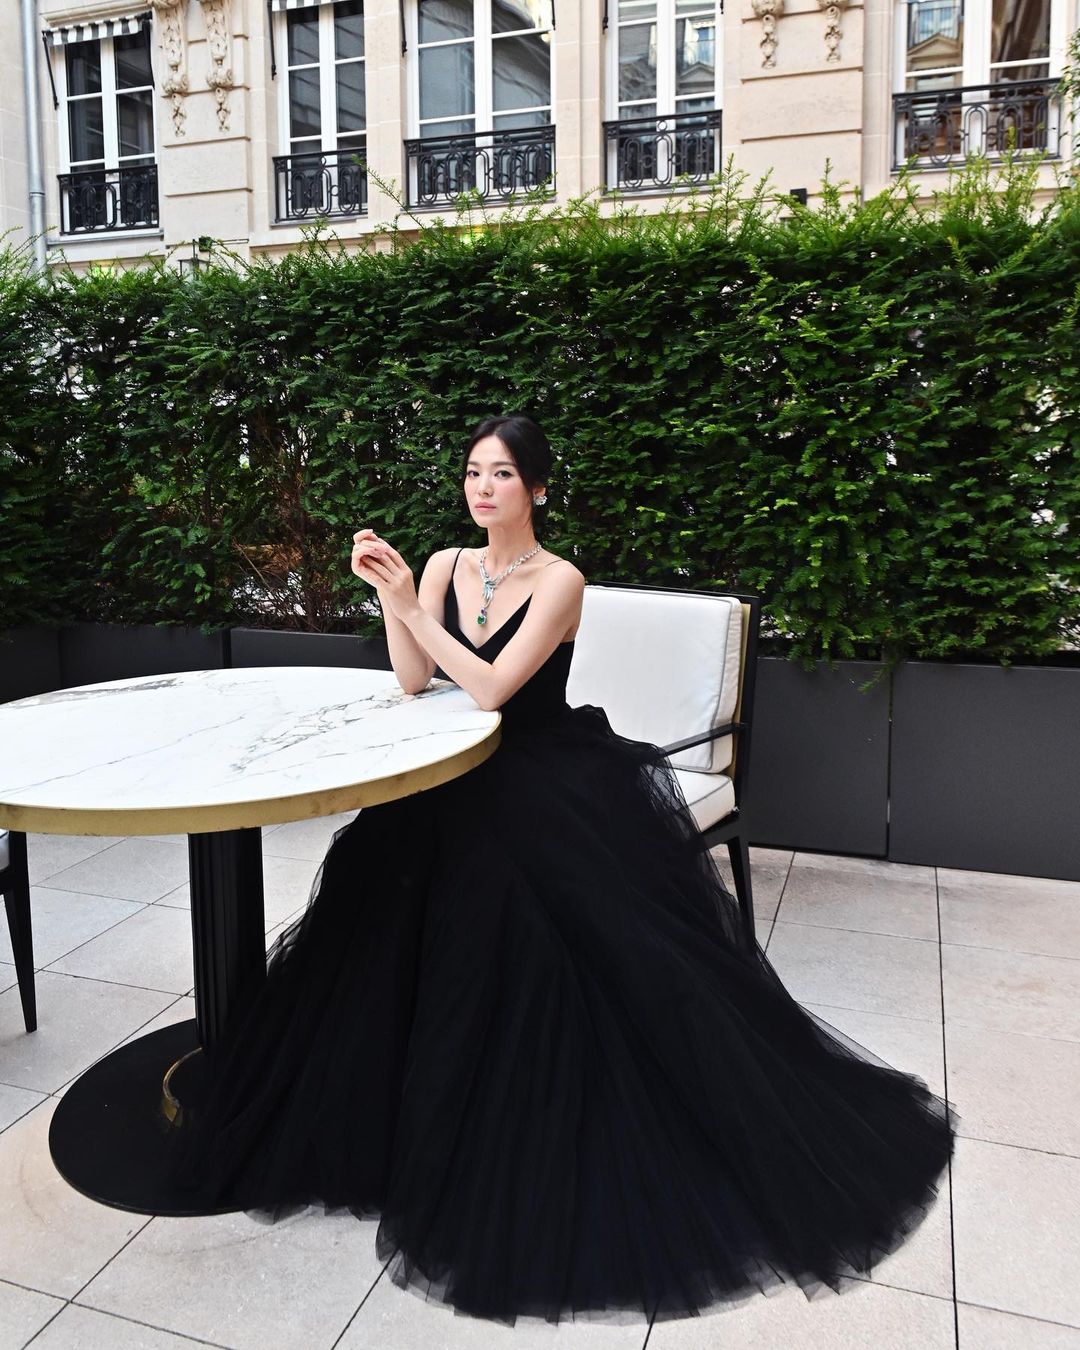 ソン・ヘギョ「億ウォン台のジュエリー」よりも光り輝く美しさ in パリ